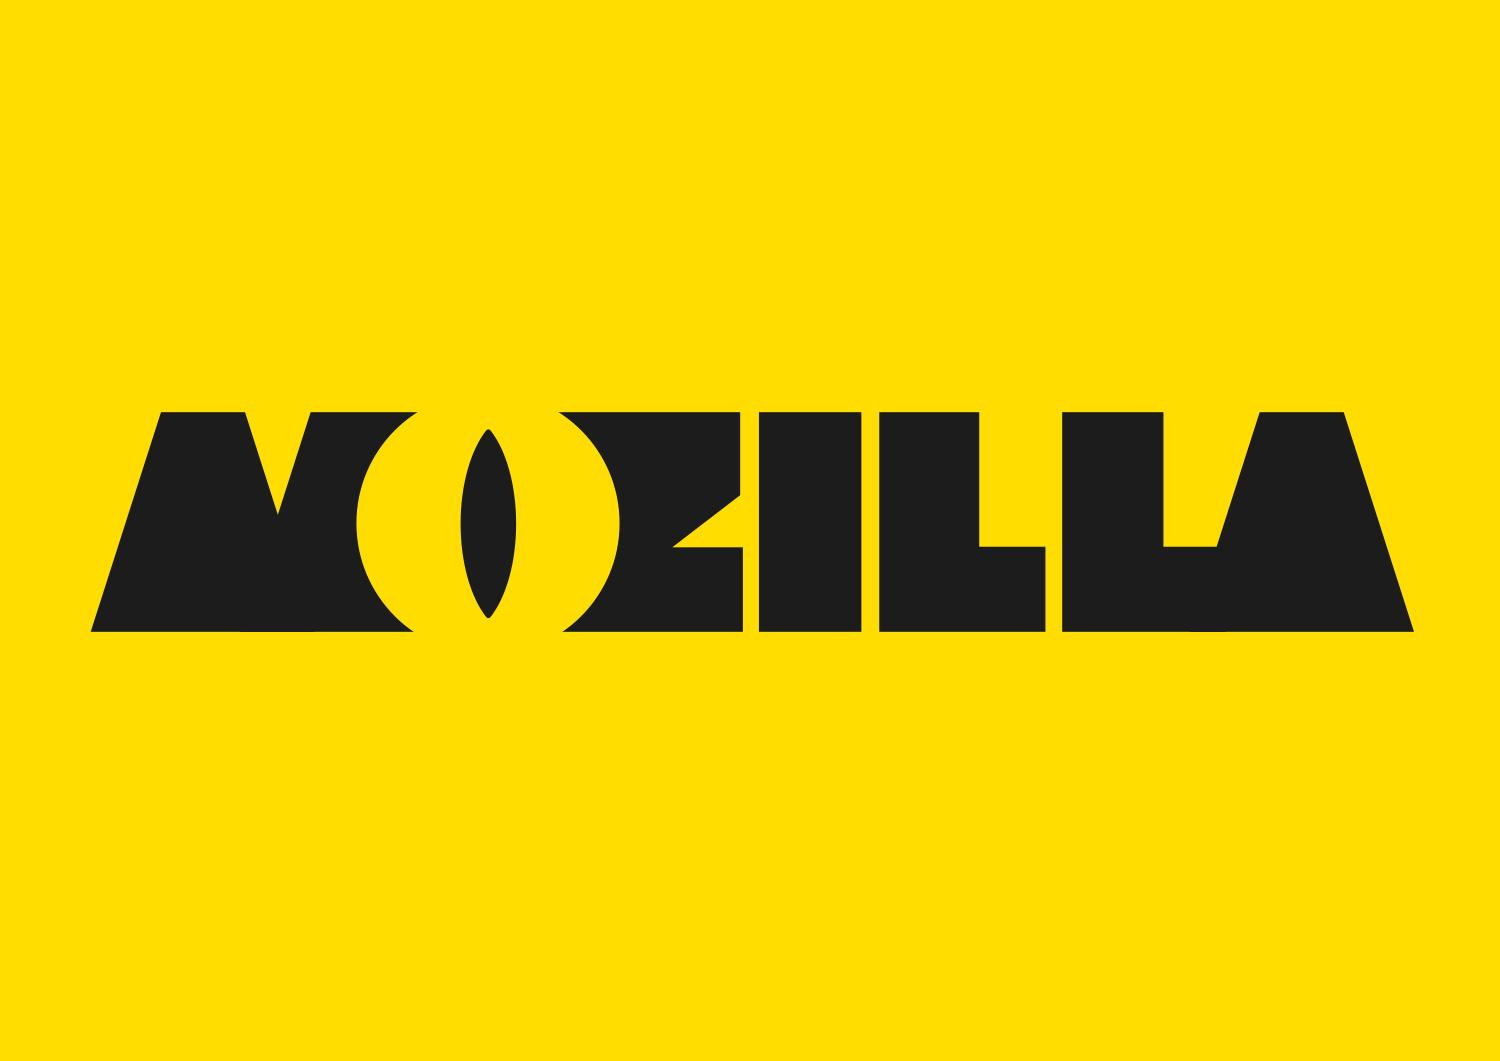 Mozzila Logo - Design Route A: The Eye - Mozilla Open Design